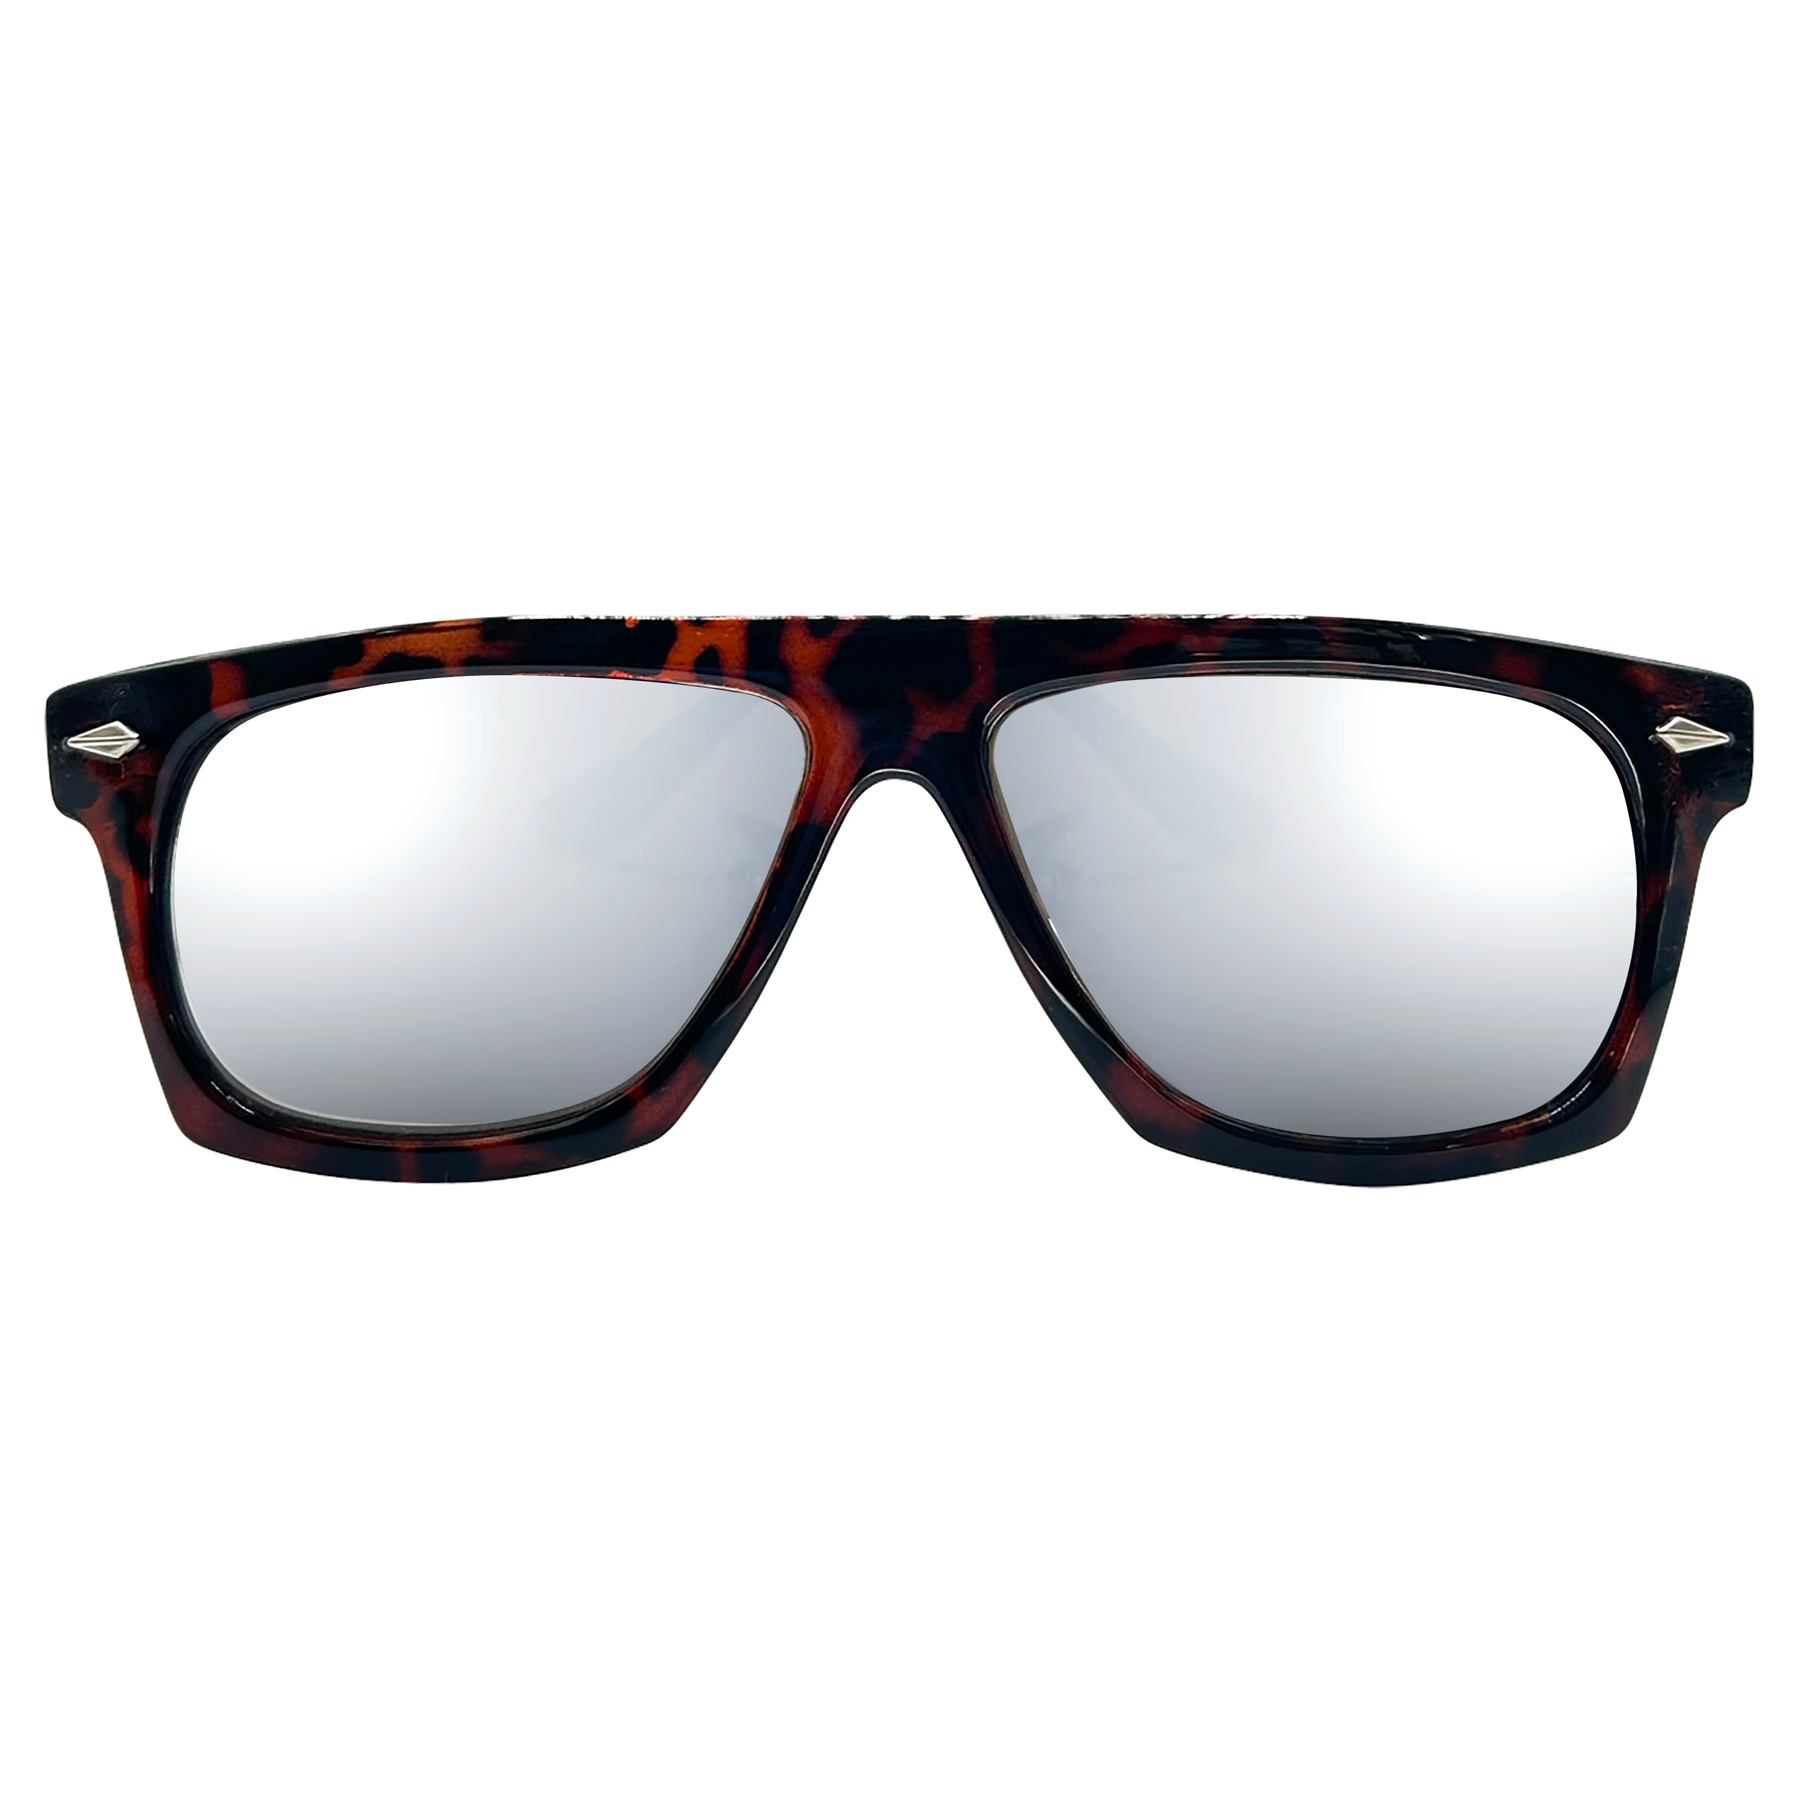 LONGWAY Tortoise/Mirror Indie Sunglasses